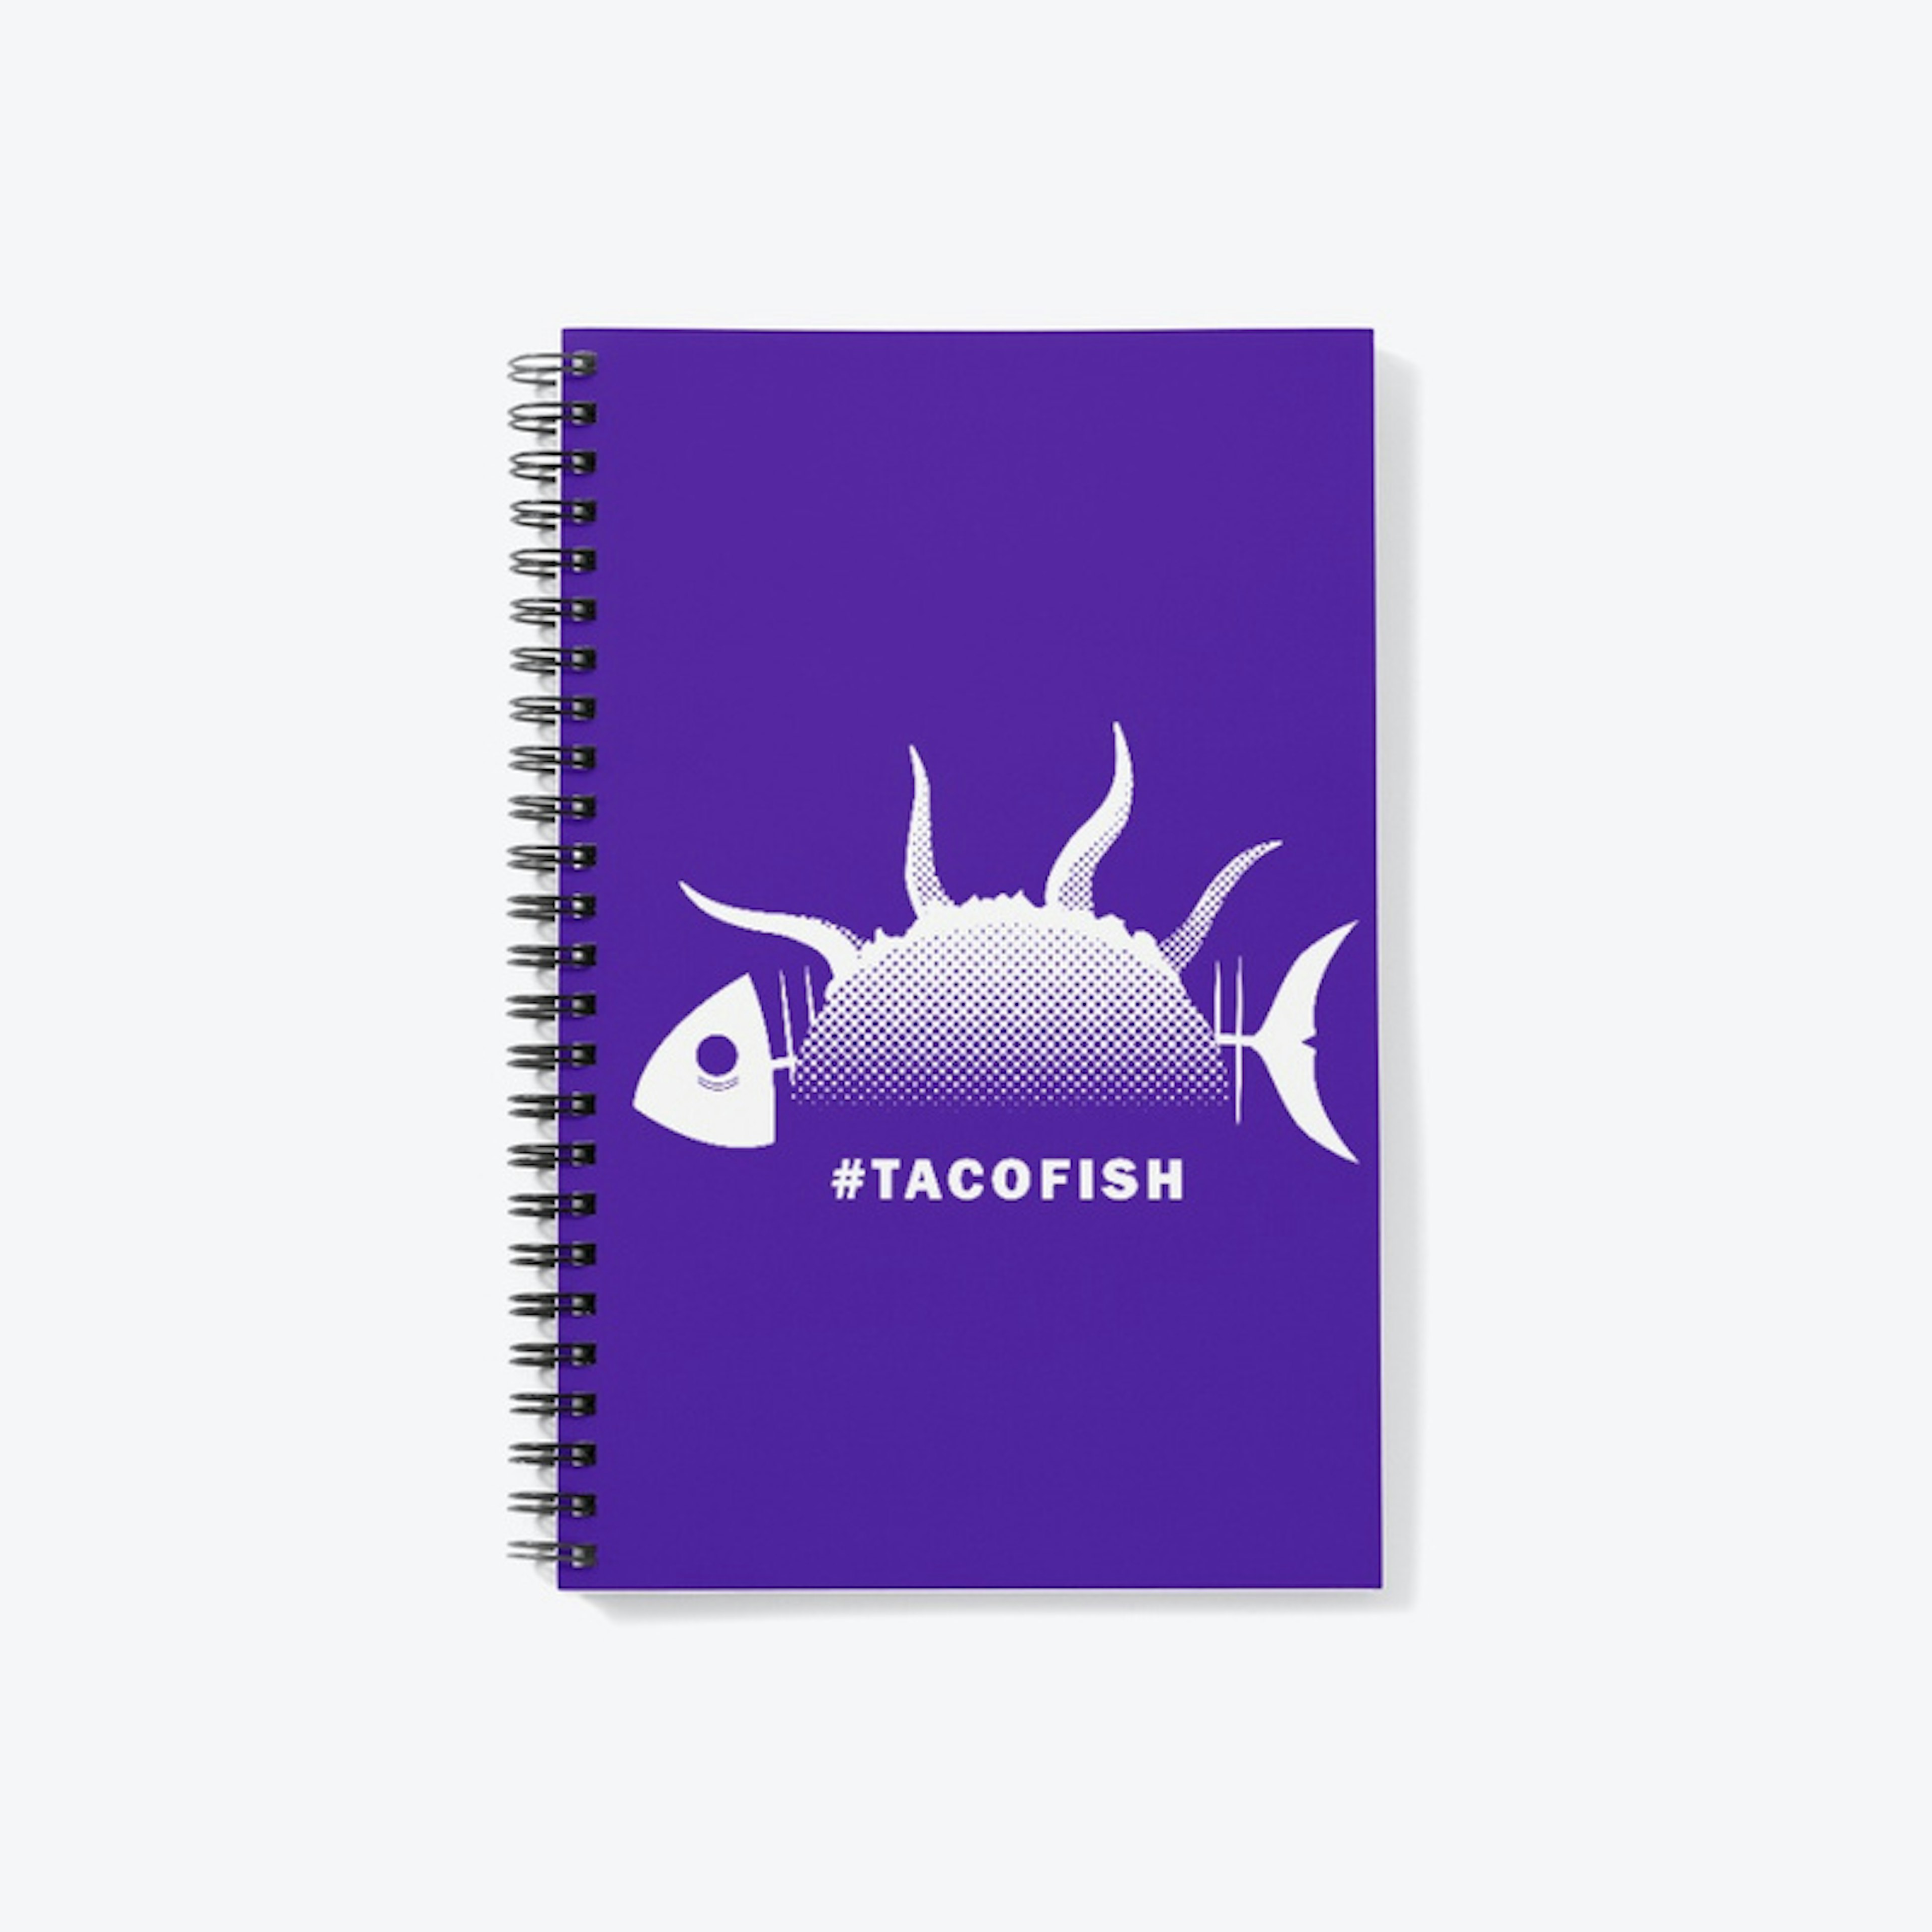 TacoFish 1.0